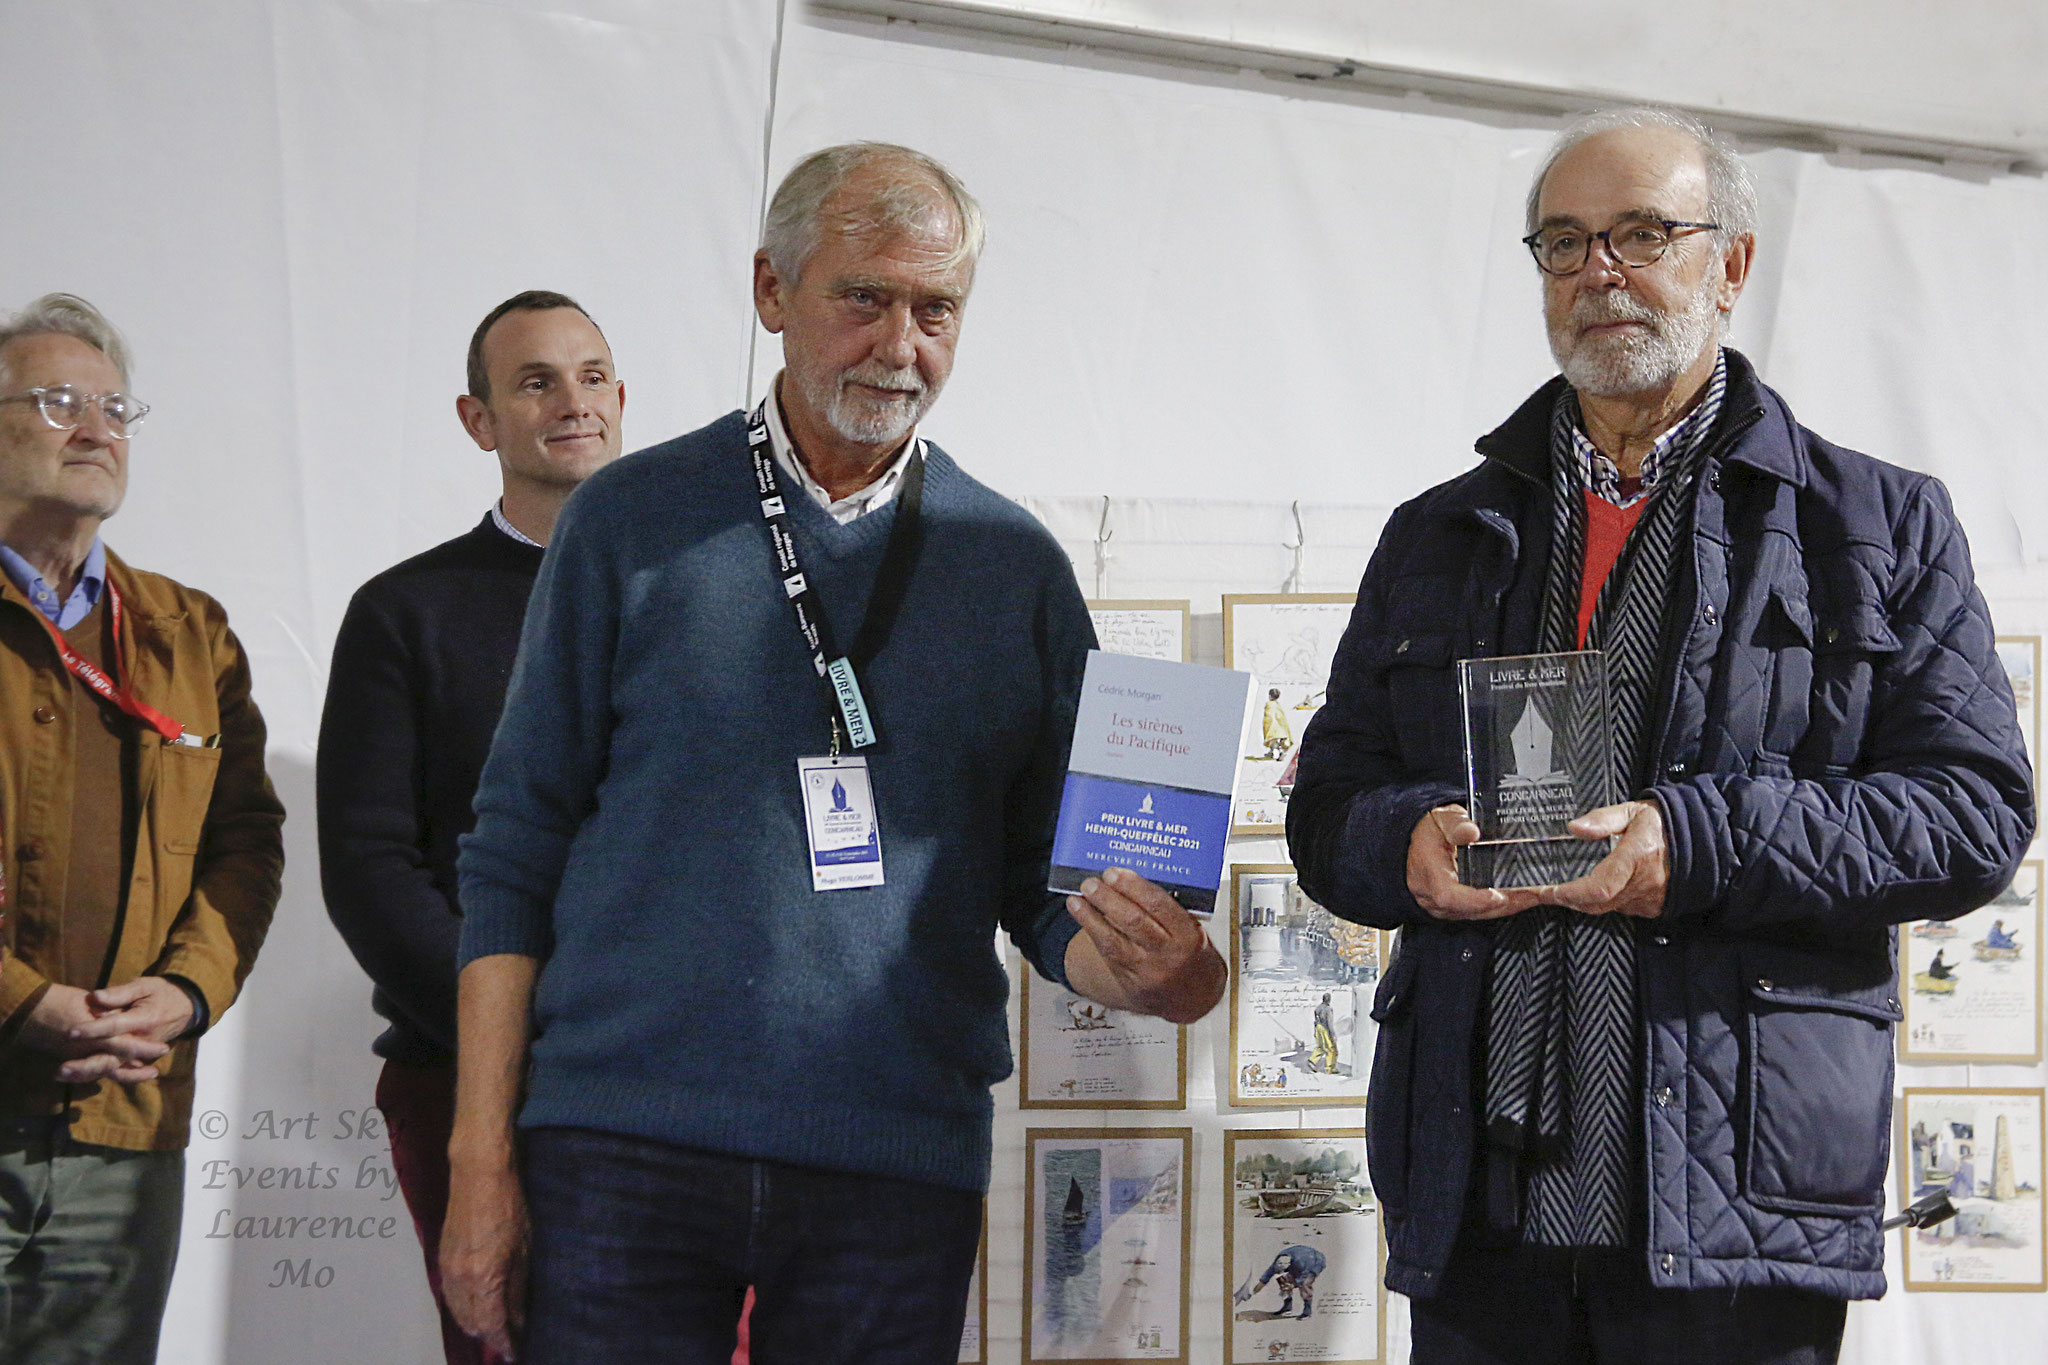 Hugo Verlomme, président d'honneur 2020 & 2021, & Cédric Morgan, Prix Livre & Mer Henri-Queffélec 2021 © Laurence Mo / Art Sky Events